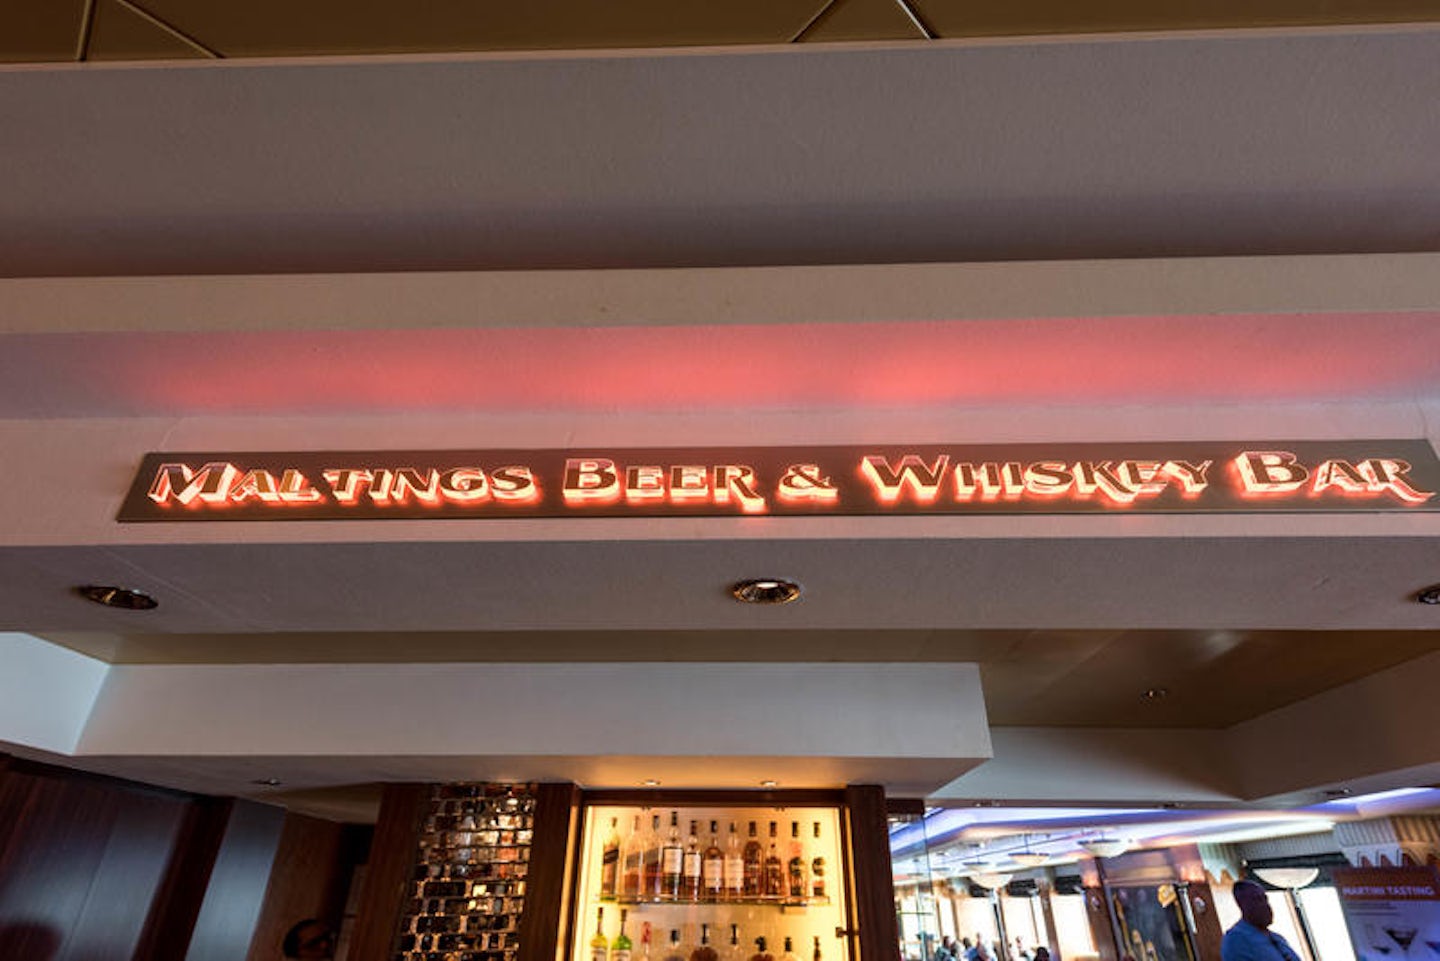 Maltings Beer & Whiskey Bar on Norwegian Pearl